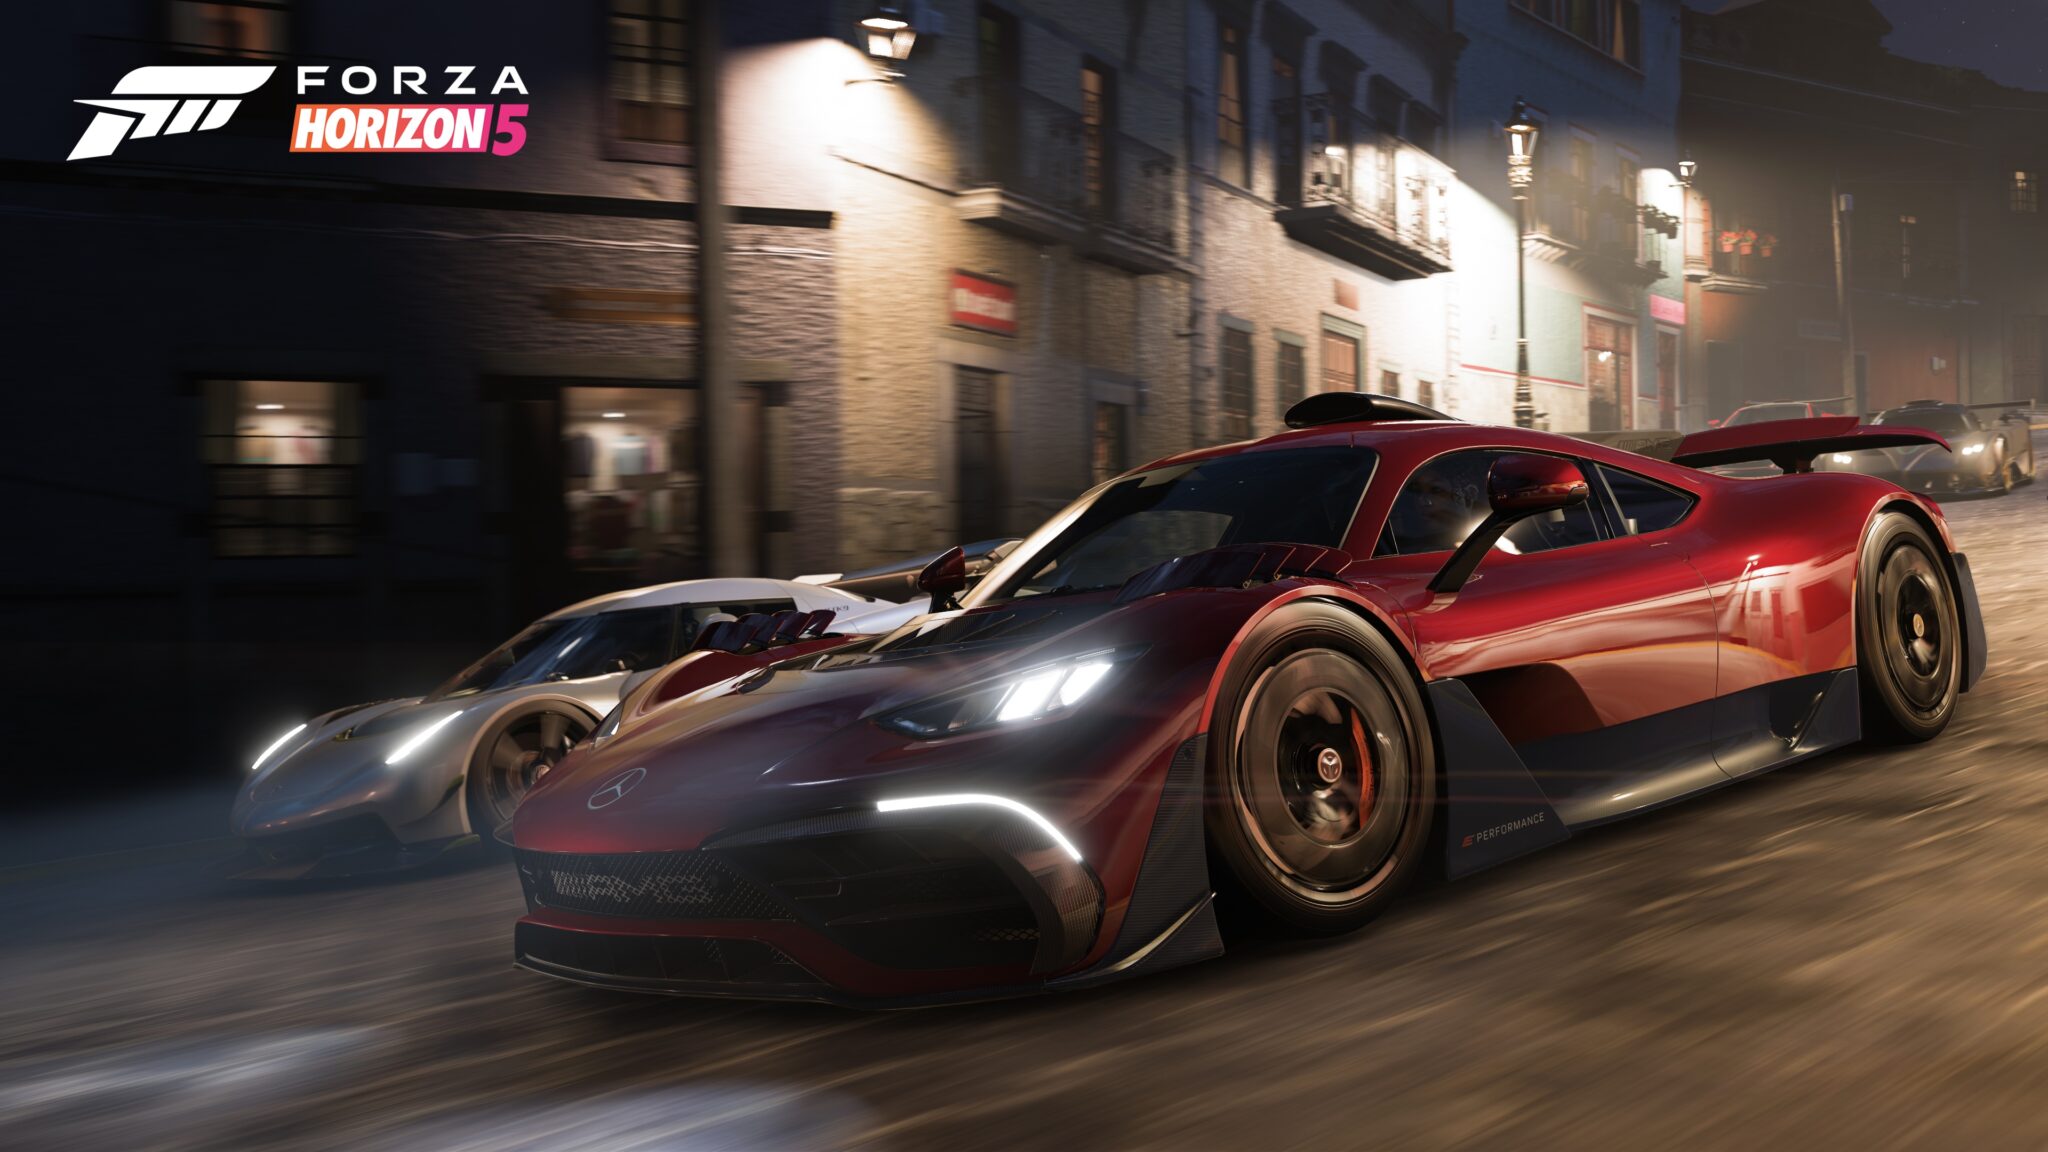 Forza Horizon 5では、もちろん古典的なレースのファンタジーを楽しむことができますが、それを追求する必要はありません。